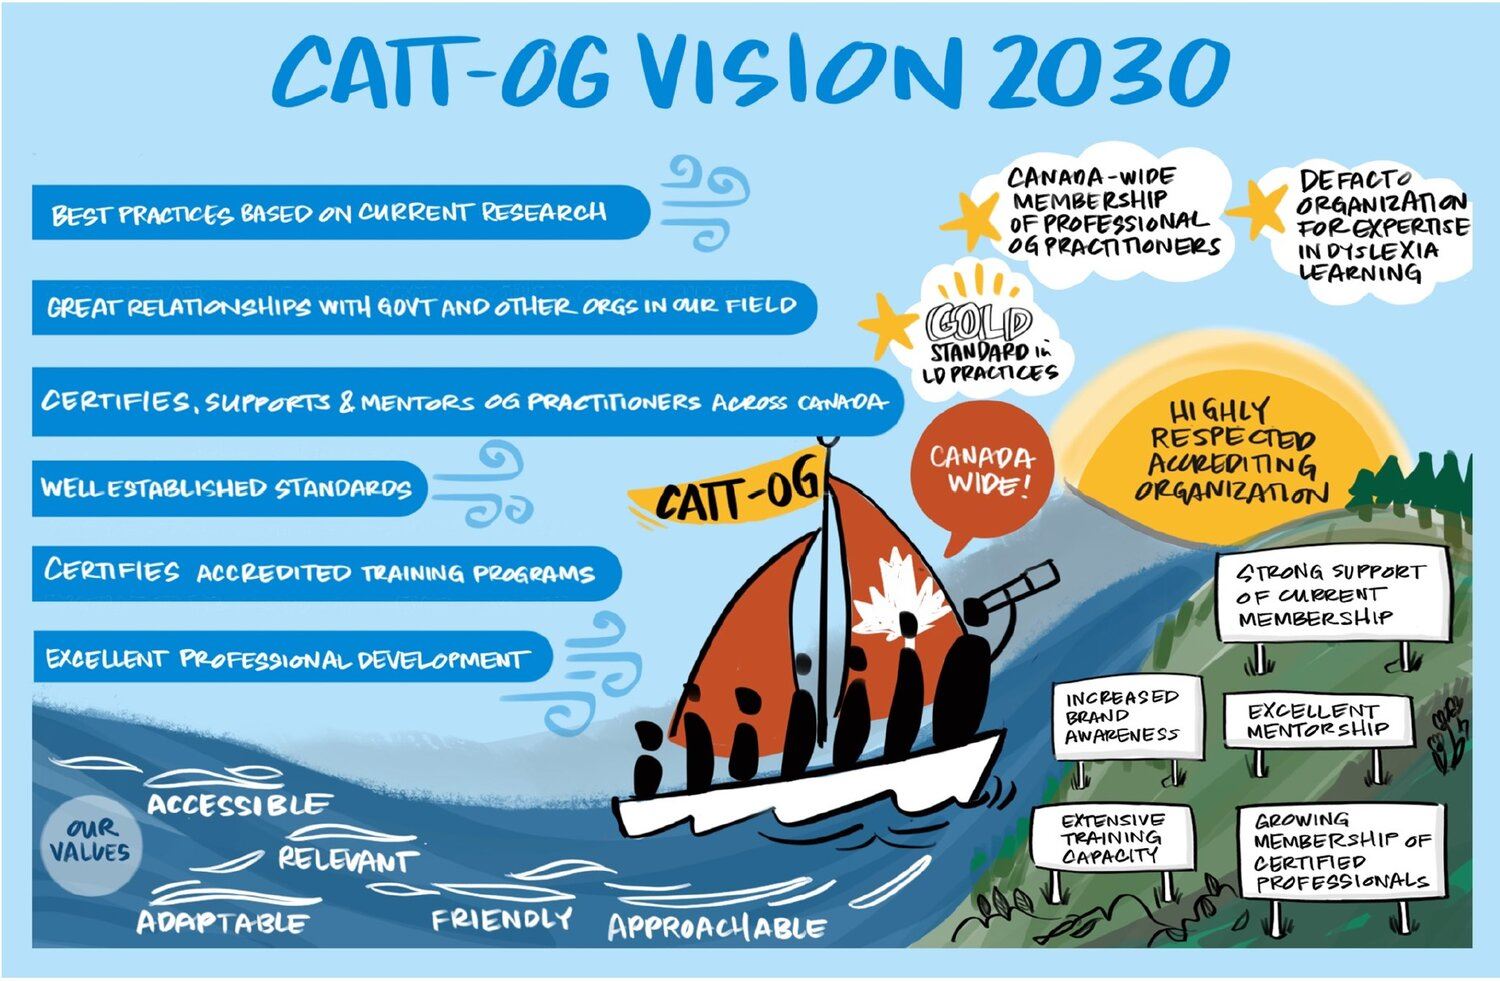 CATT-OG Vision 2023